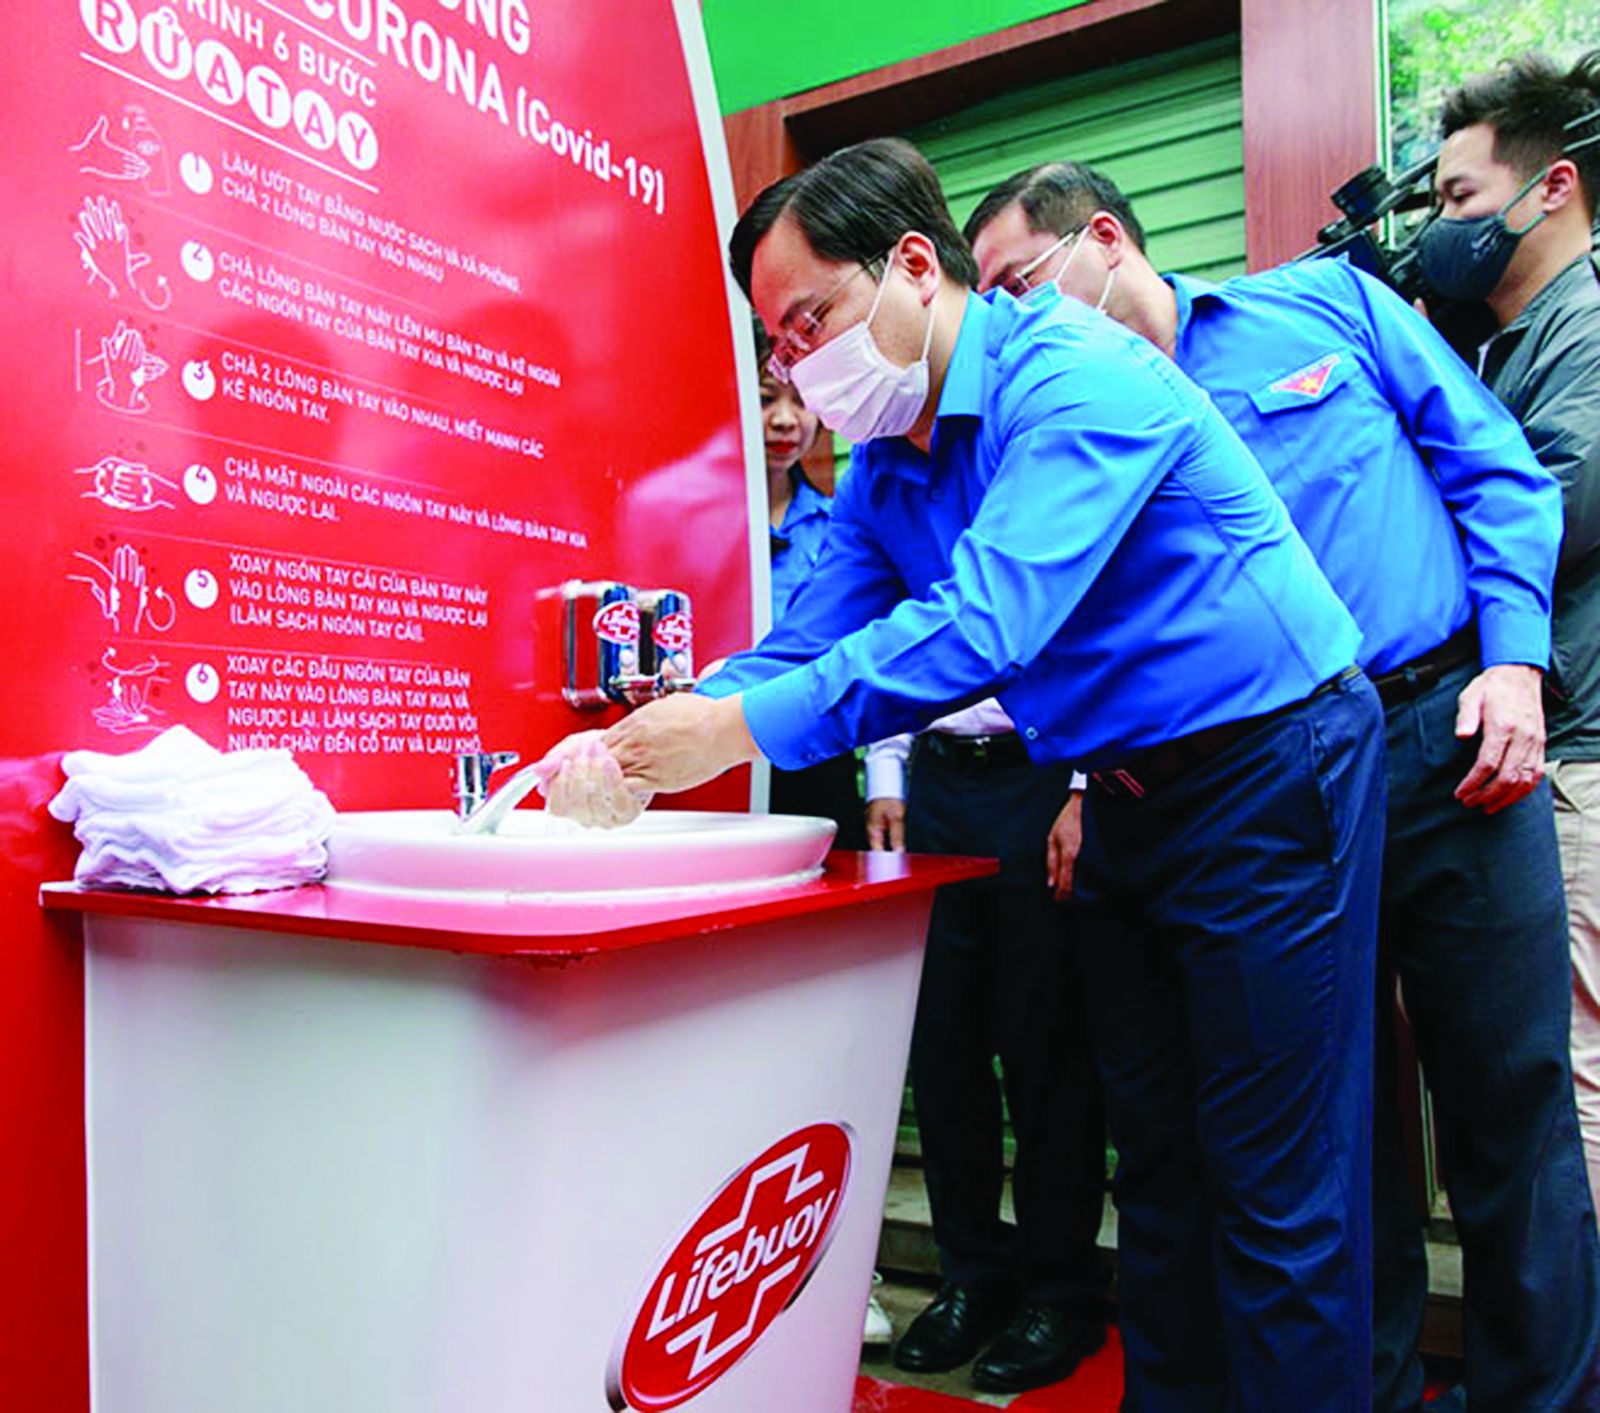  Chiến dịch “Ghen Cô Vy” của nhãn hàng Lifebuoy gây quỹ xây dựng 100 trạm rửa tay tạo tiếng vang trong dư luận.